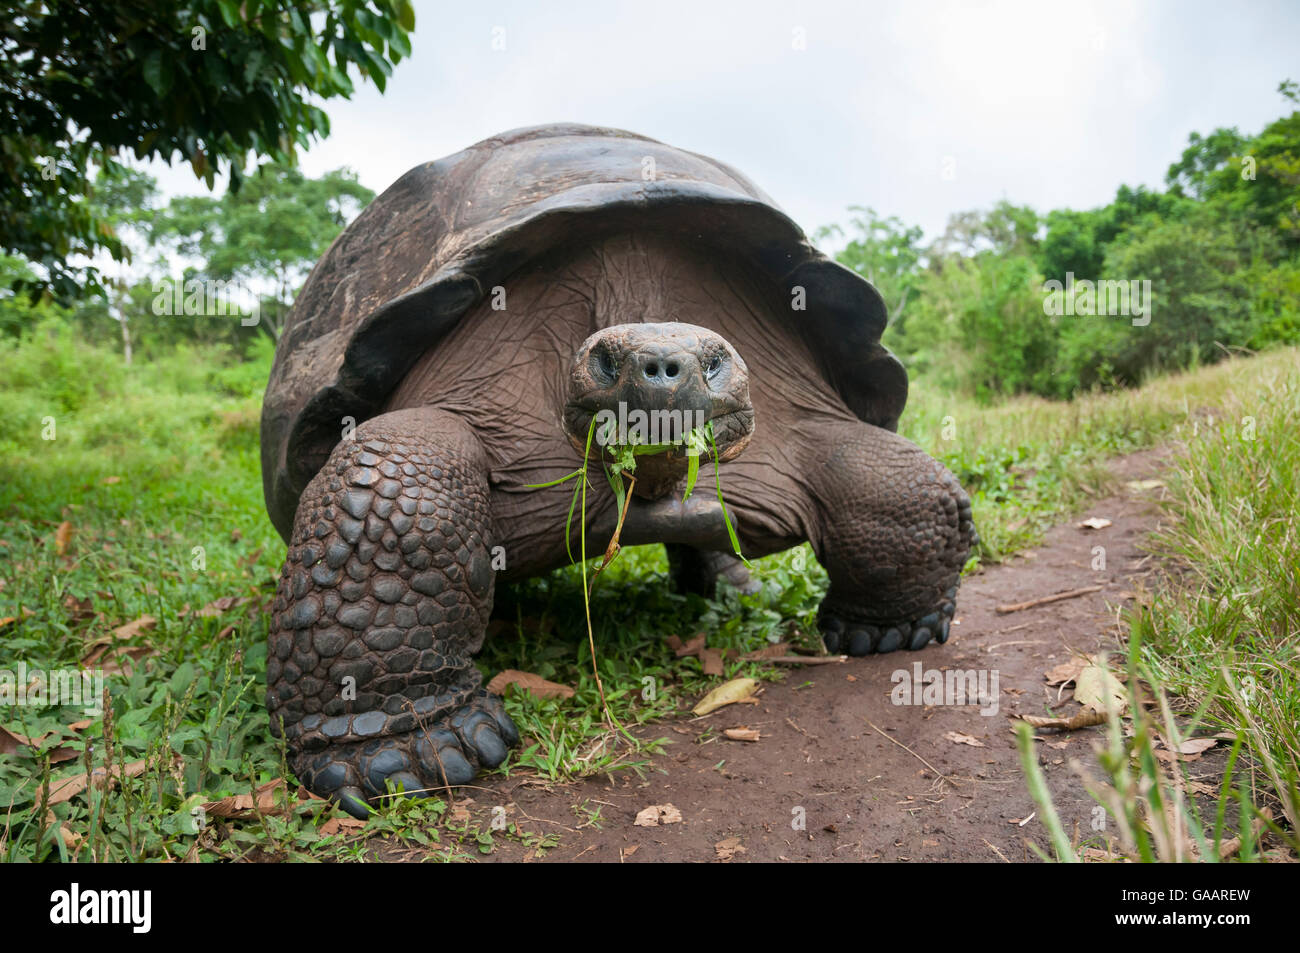 Какой самый медленный человек. Галапагосская черепаха. Галапагосская слоновая черепаха. Гигантская черепаха Галапагоса. Гигантская черепаха Альдабра.